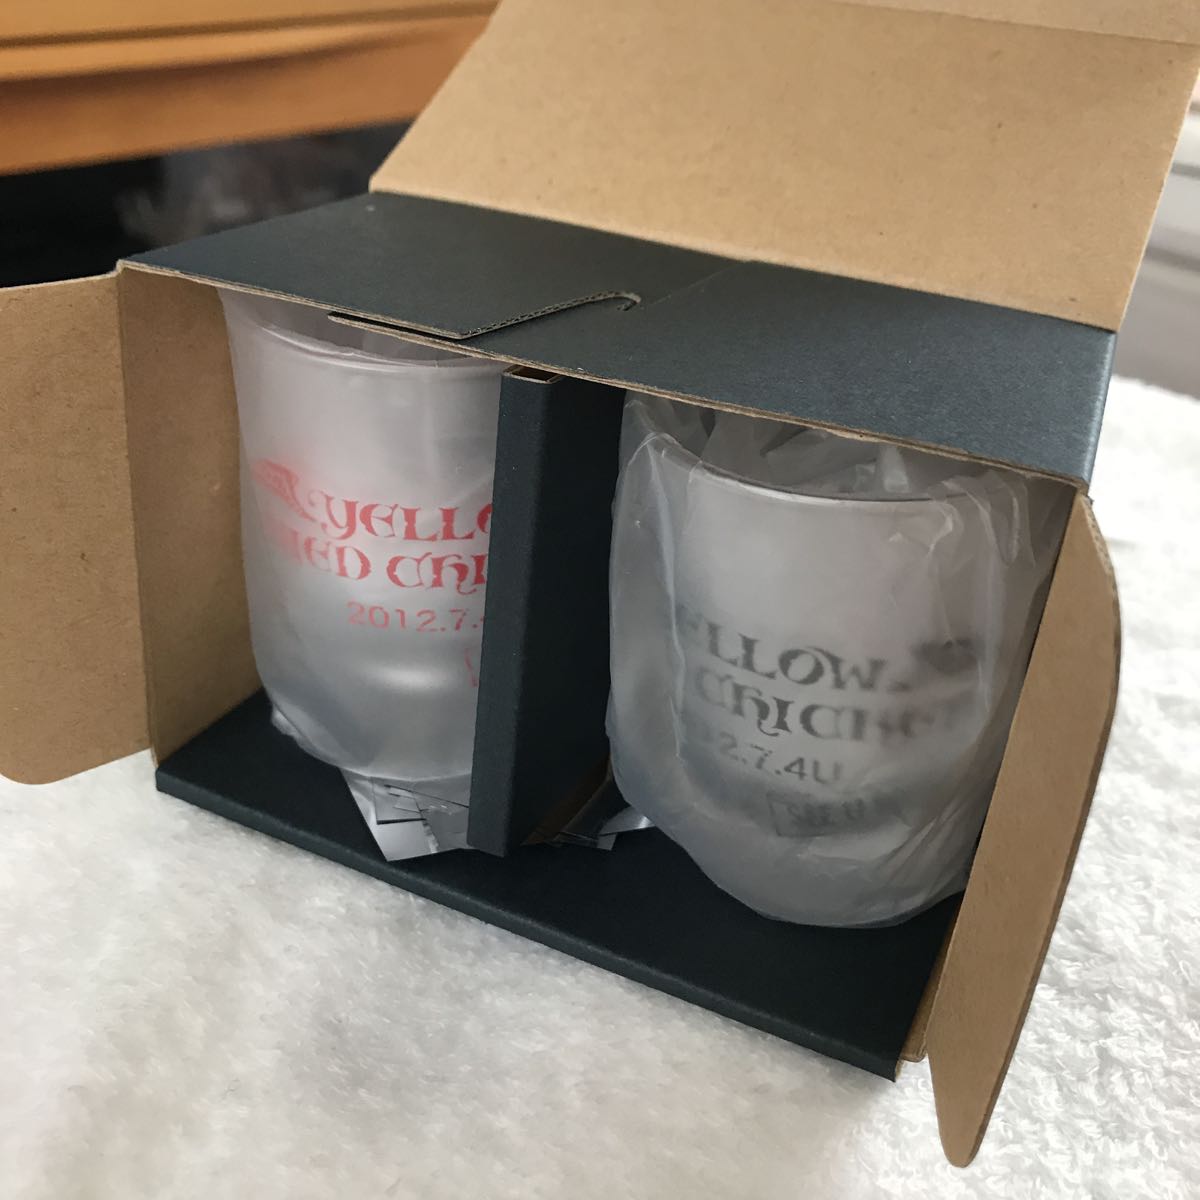 Gackt shot glasses, only $80!